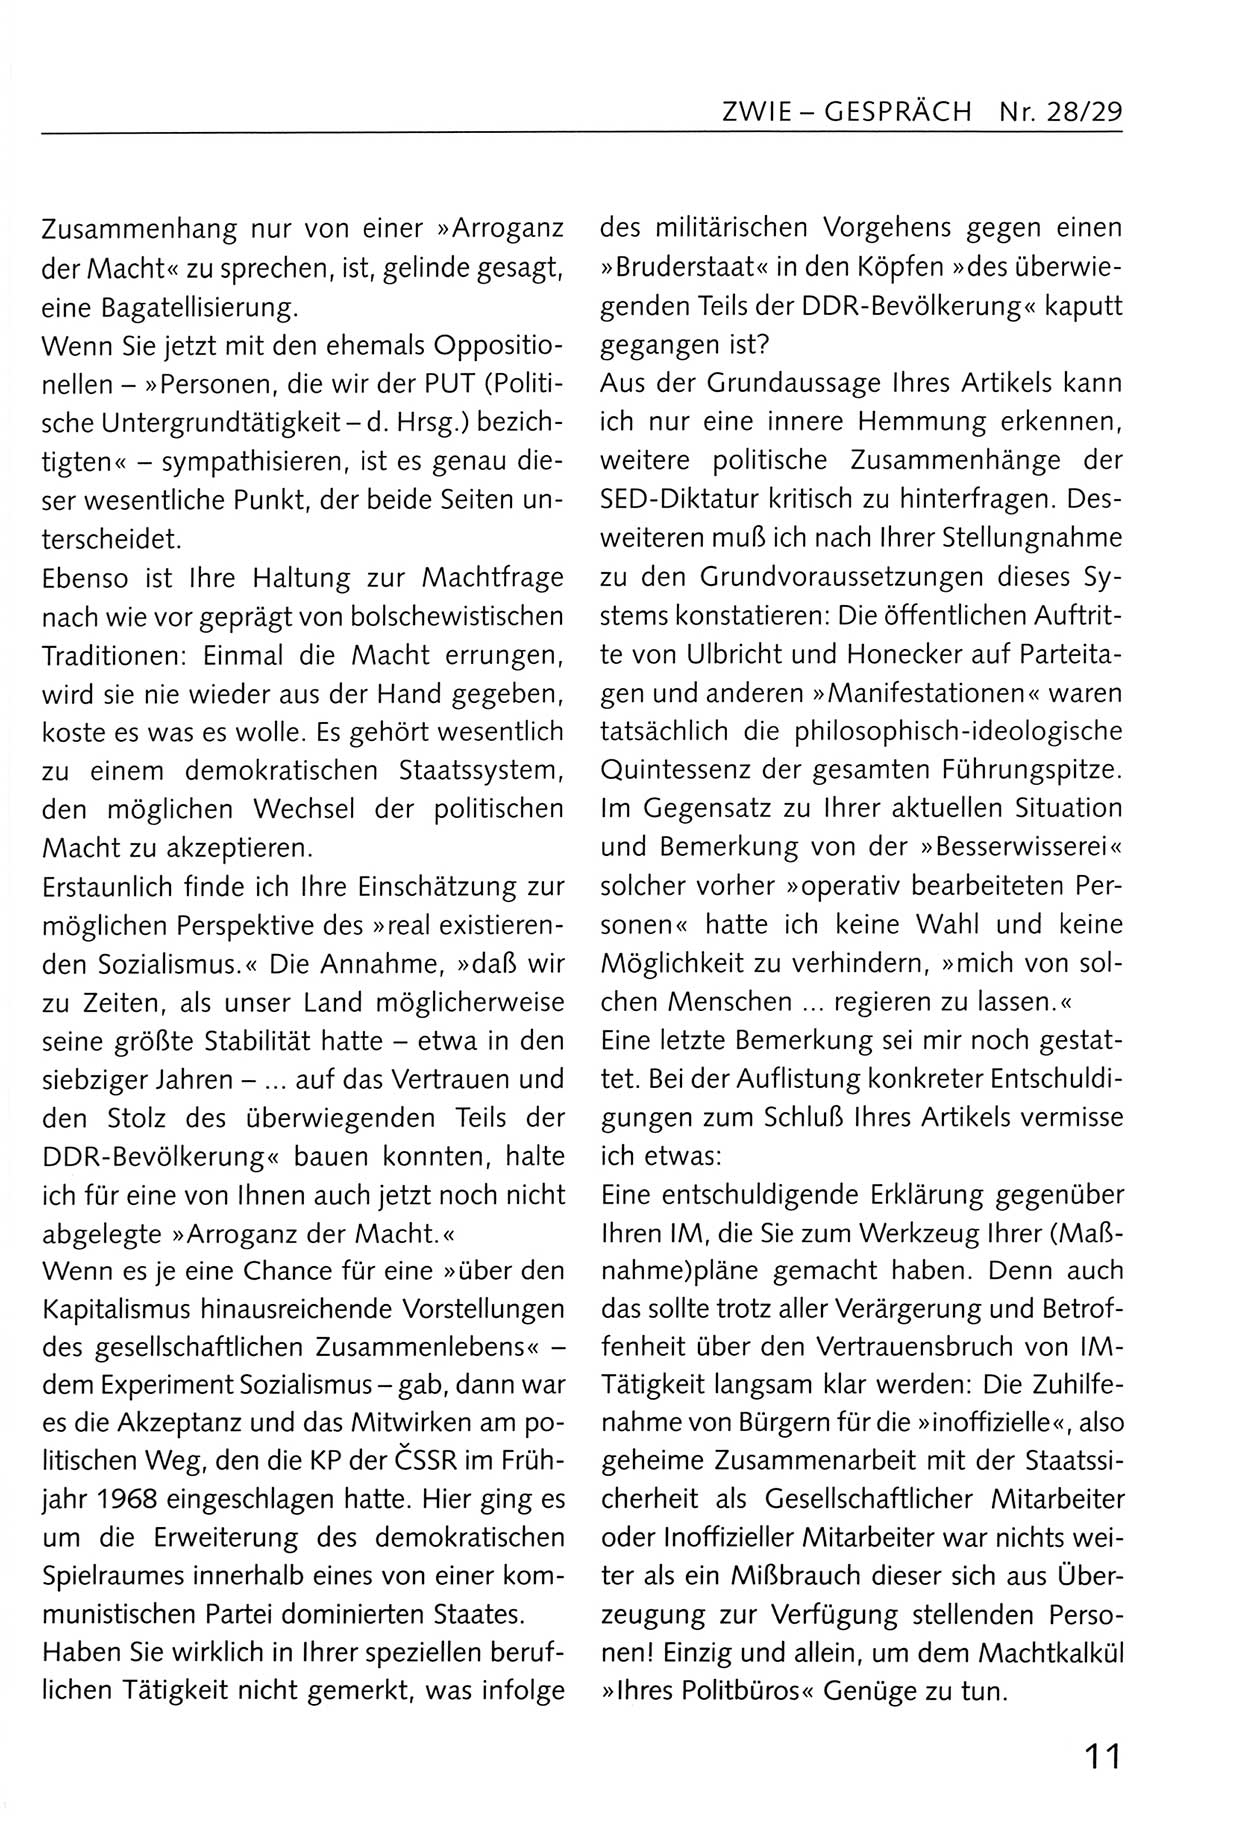 Zwie-Gespräch, Beiträge zum Umgang mit der Staatssicherheits-Vergangenheit [Deutsche Demokratische Republik (DDR)], Ausgabe Nr. 28/29, Berlin 1995, Seite 11 (Zwie-Gespr. Ausg. 28/29 1995, S. 11)